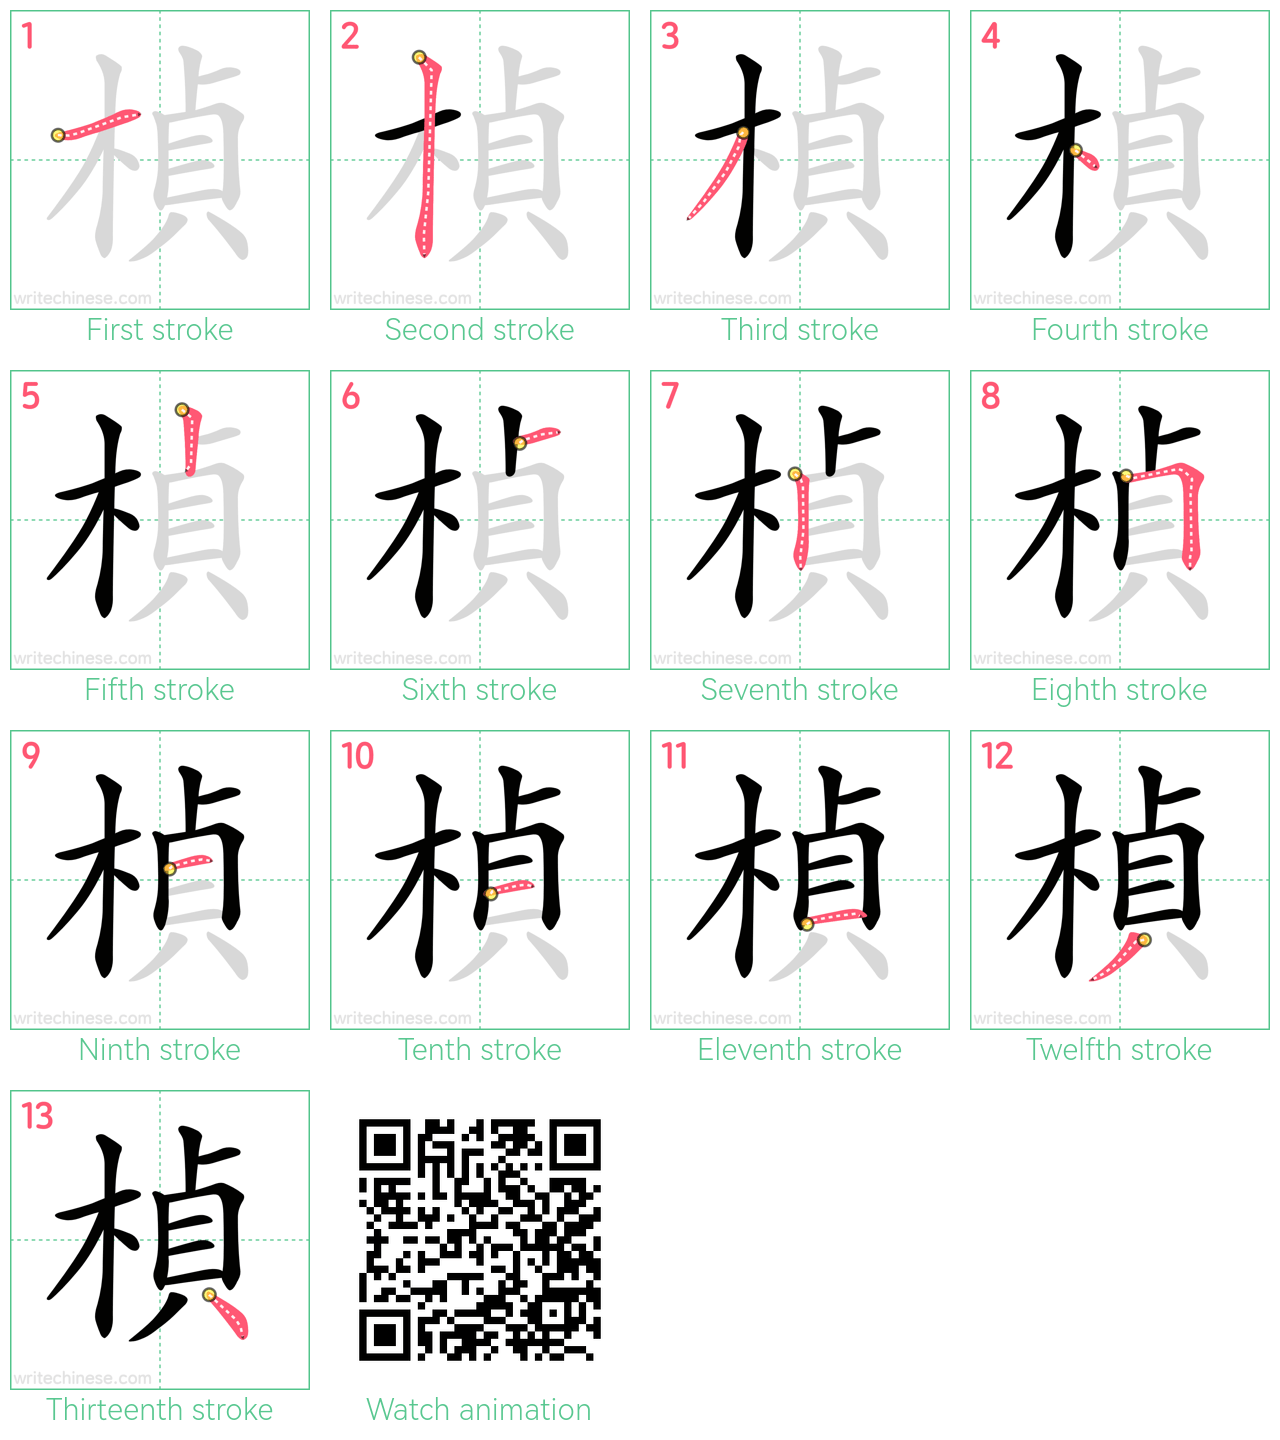 楨 step-by-step stroke order diagrams